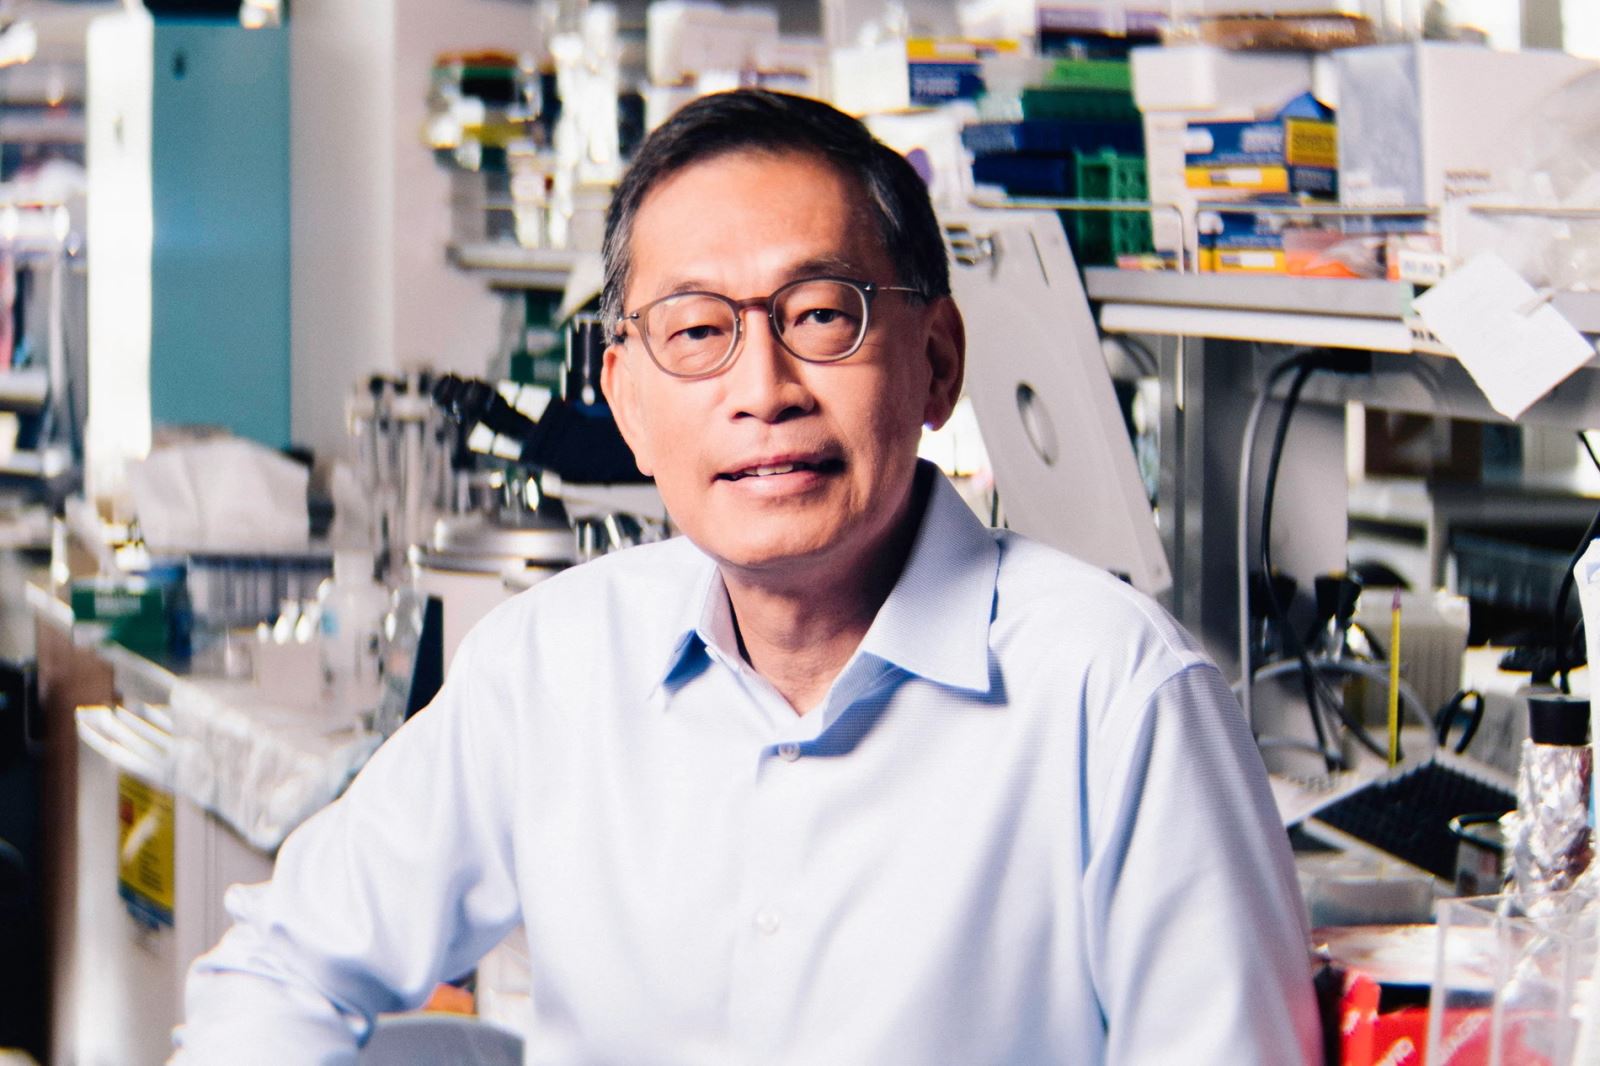 GS. Đặng Văn Chí - Giám đốc Khoa học của Viện Nghiên cứu Ung thư Ludwig, người góp phần làm sáng tỏ hoạt động của gen gây ung thư Myc và mối tương quan với quá trình chuyển hóa năng lượng của tế bào.